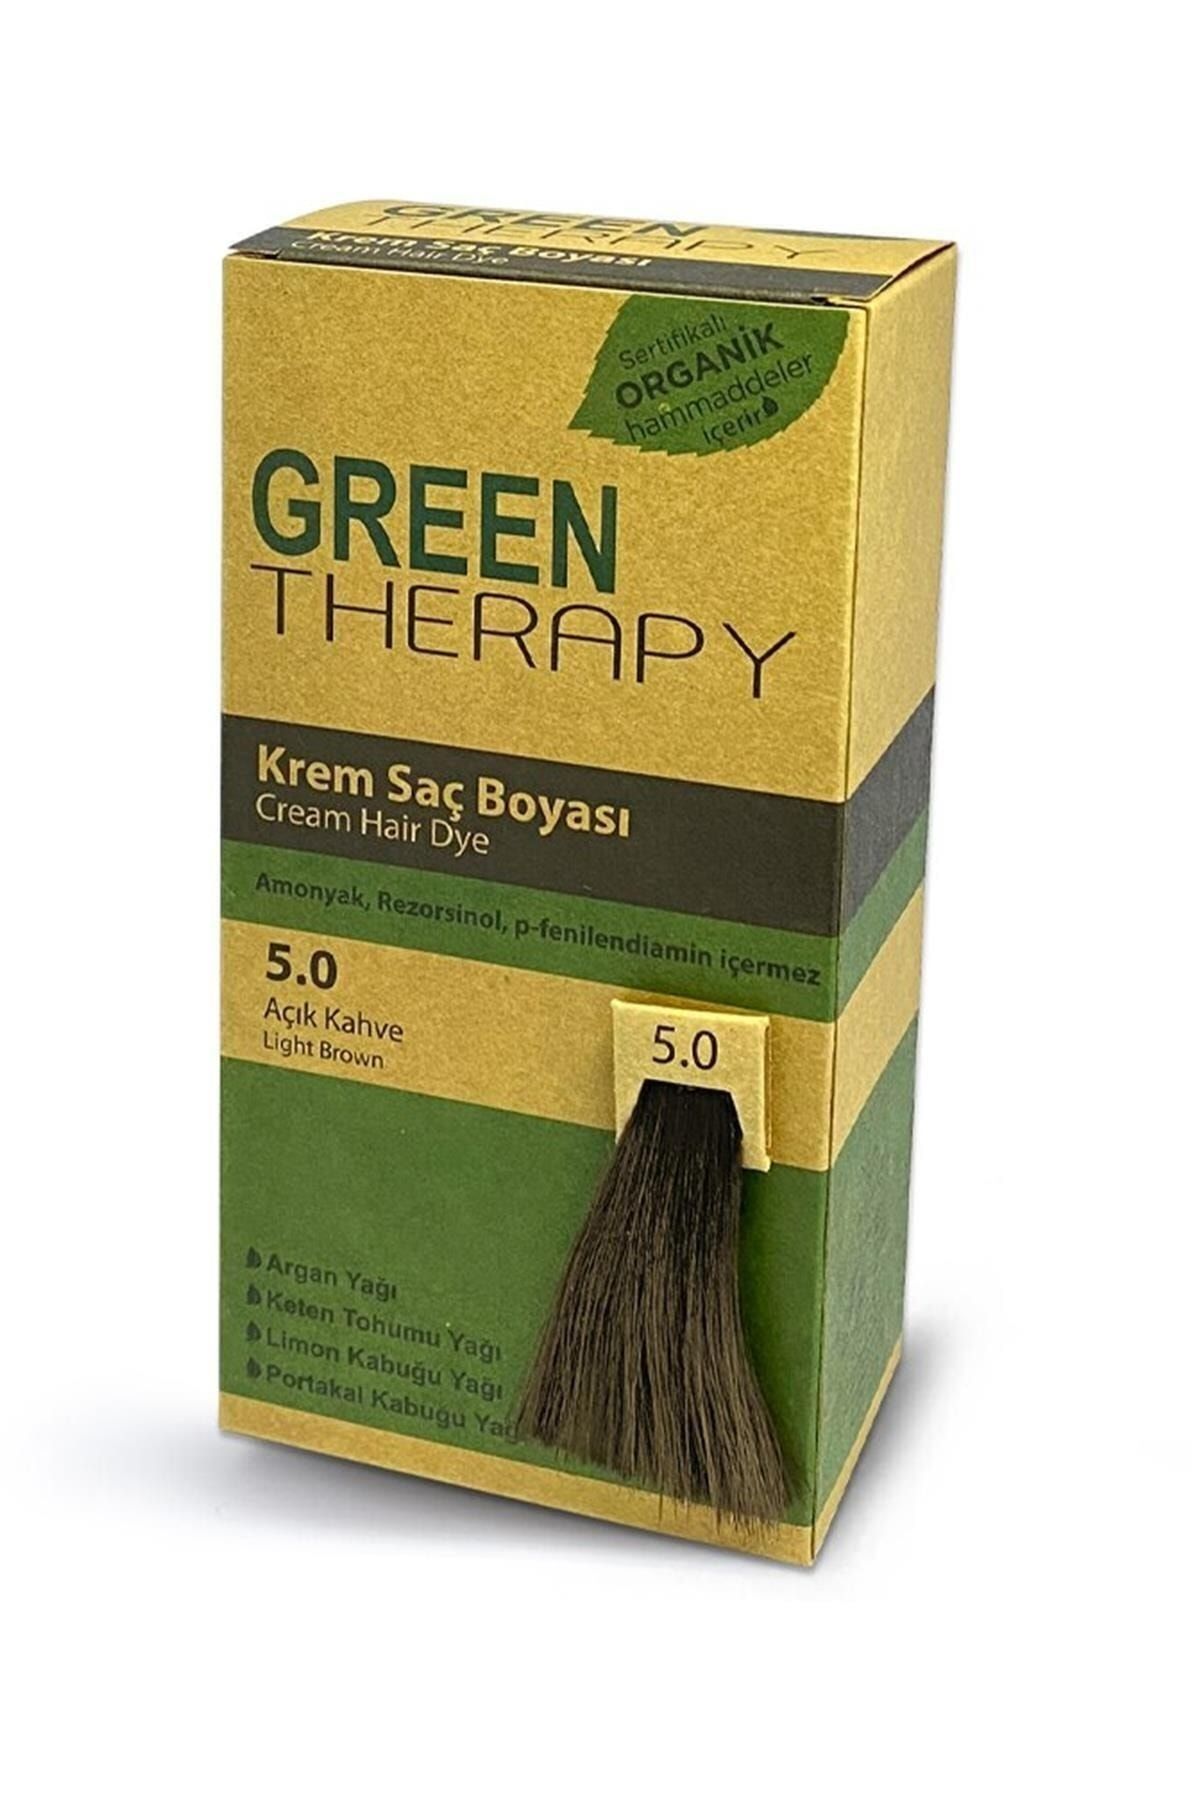 Green Therapy Krem Saç Boyası Argan Yağlı 5.0 Açık Kahve ,,natural1154